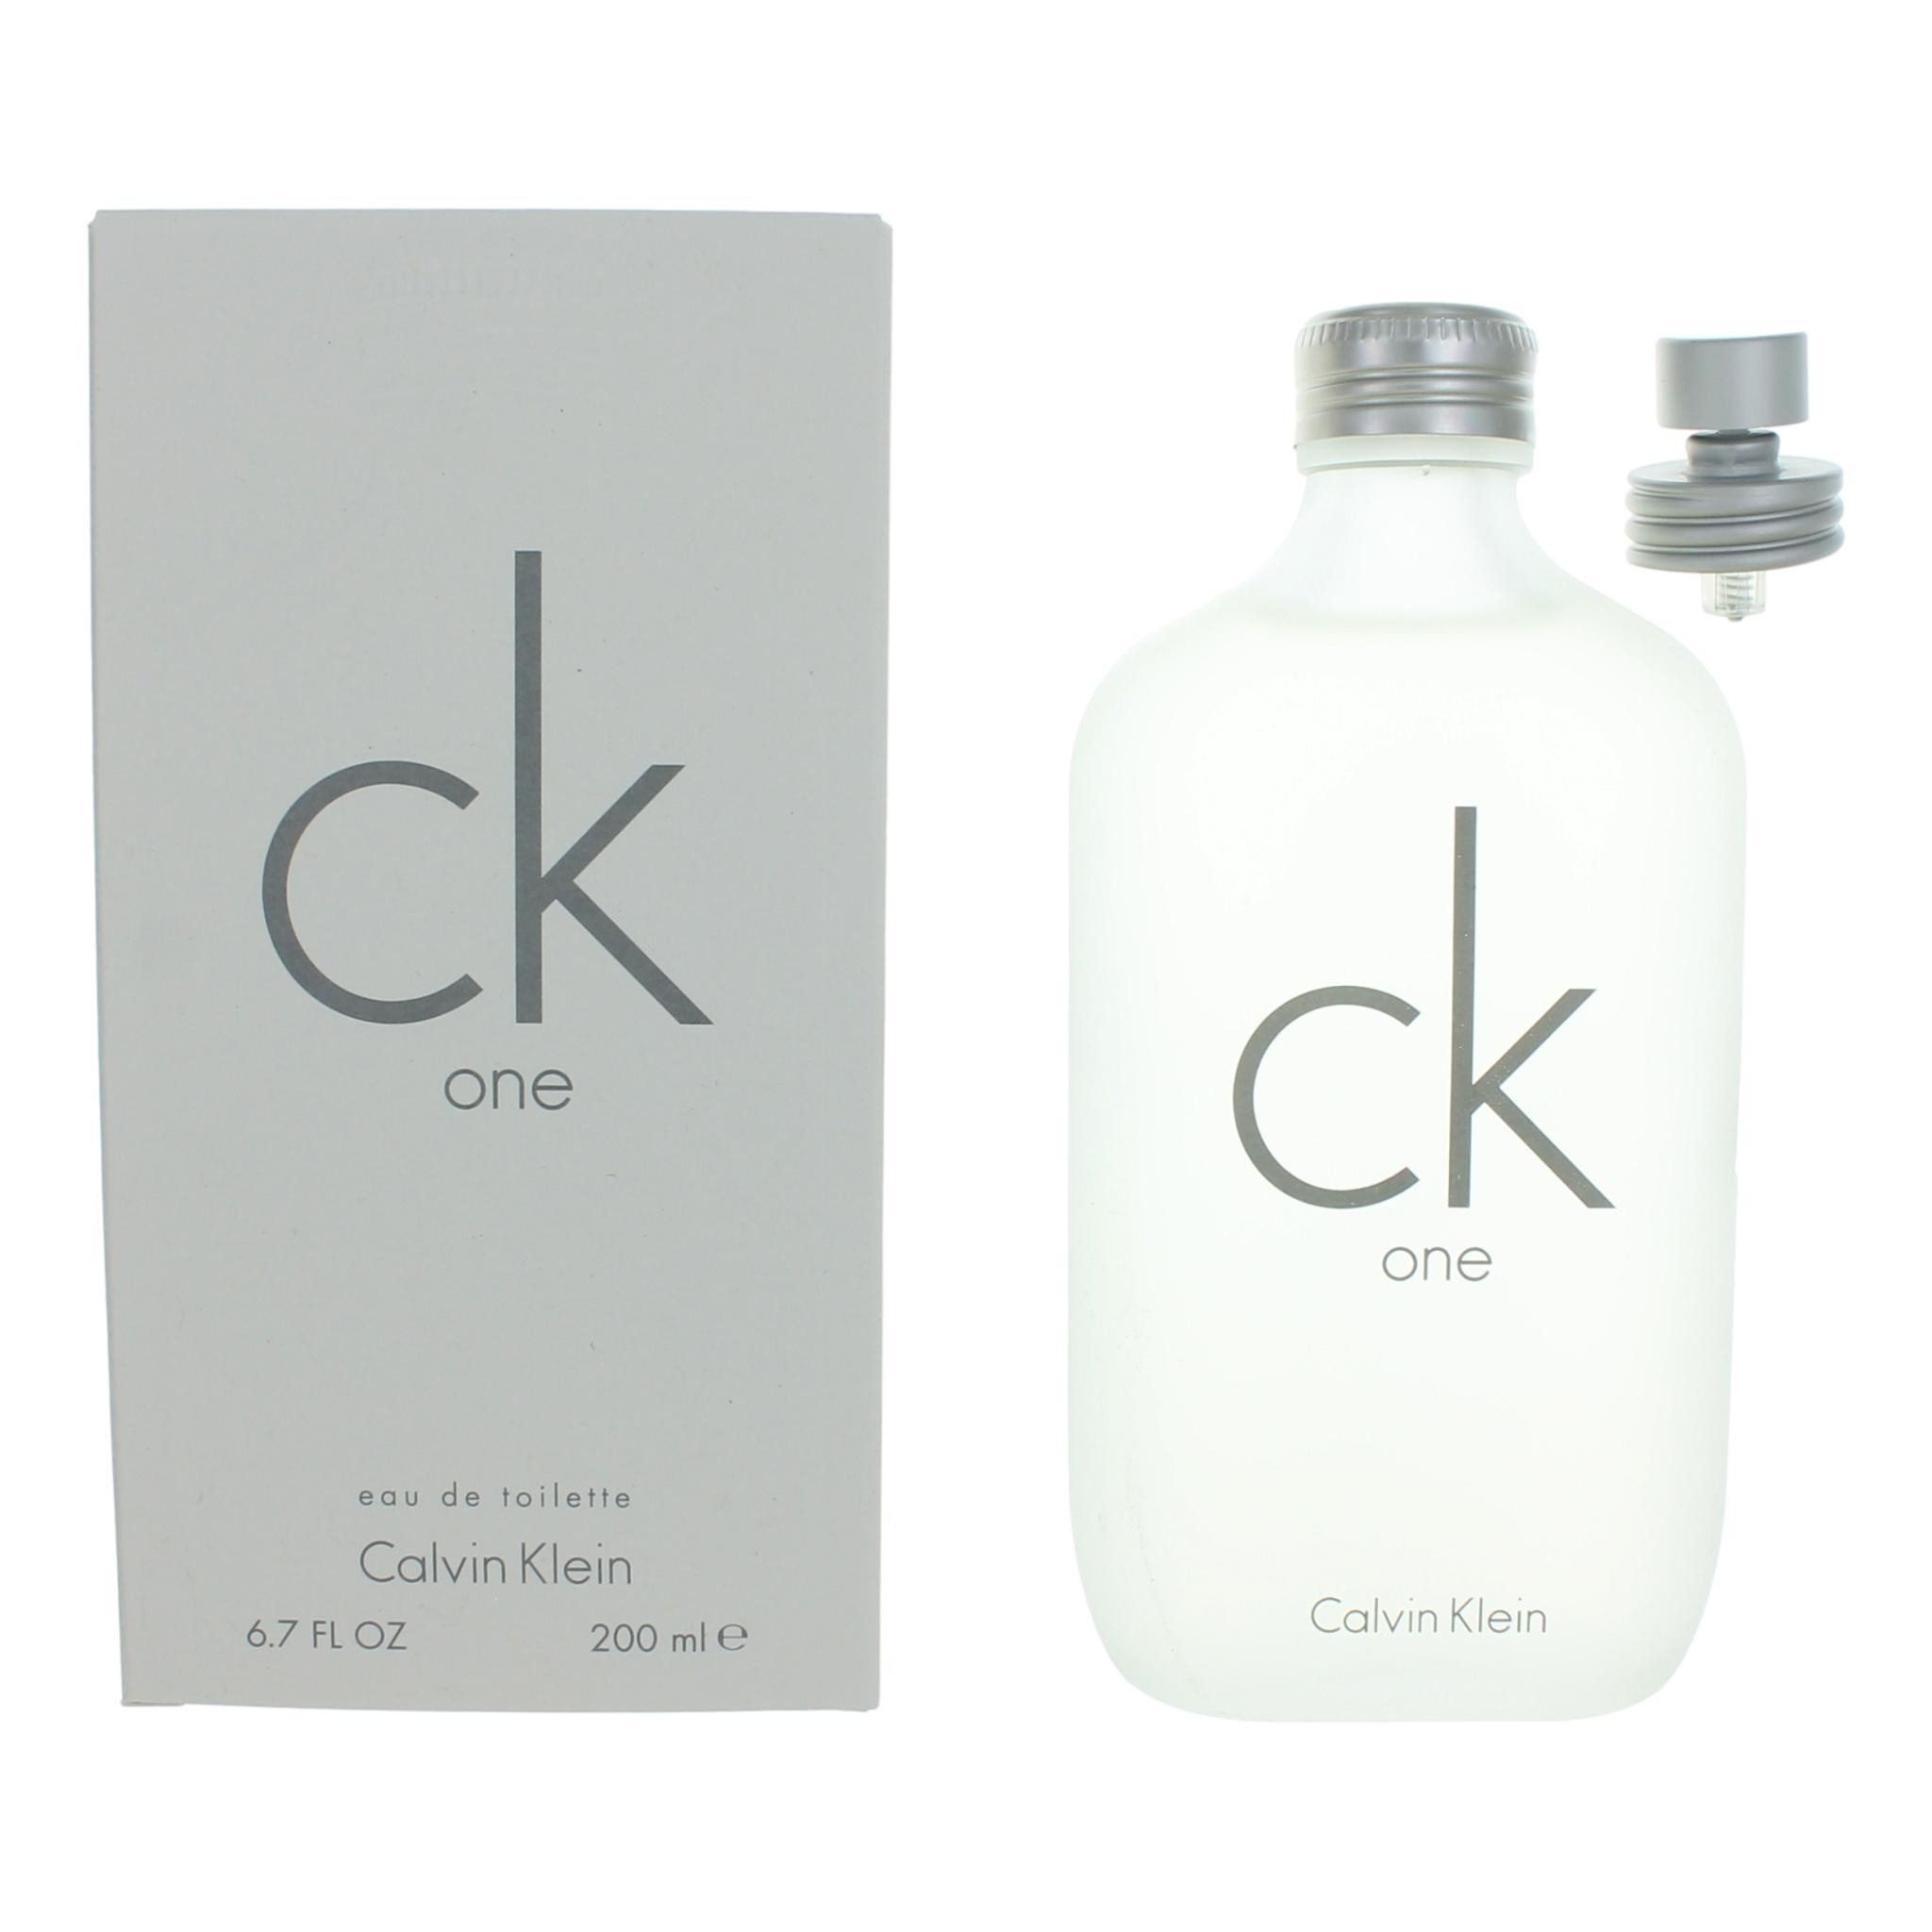 CK One by Calvin Klein 6.7 oz Eau De Toilette Spray Unisex